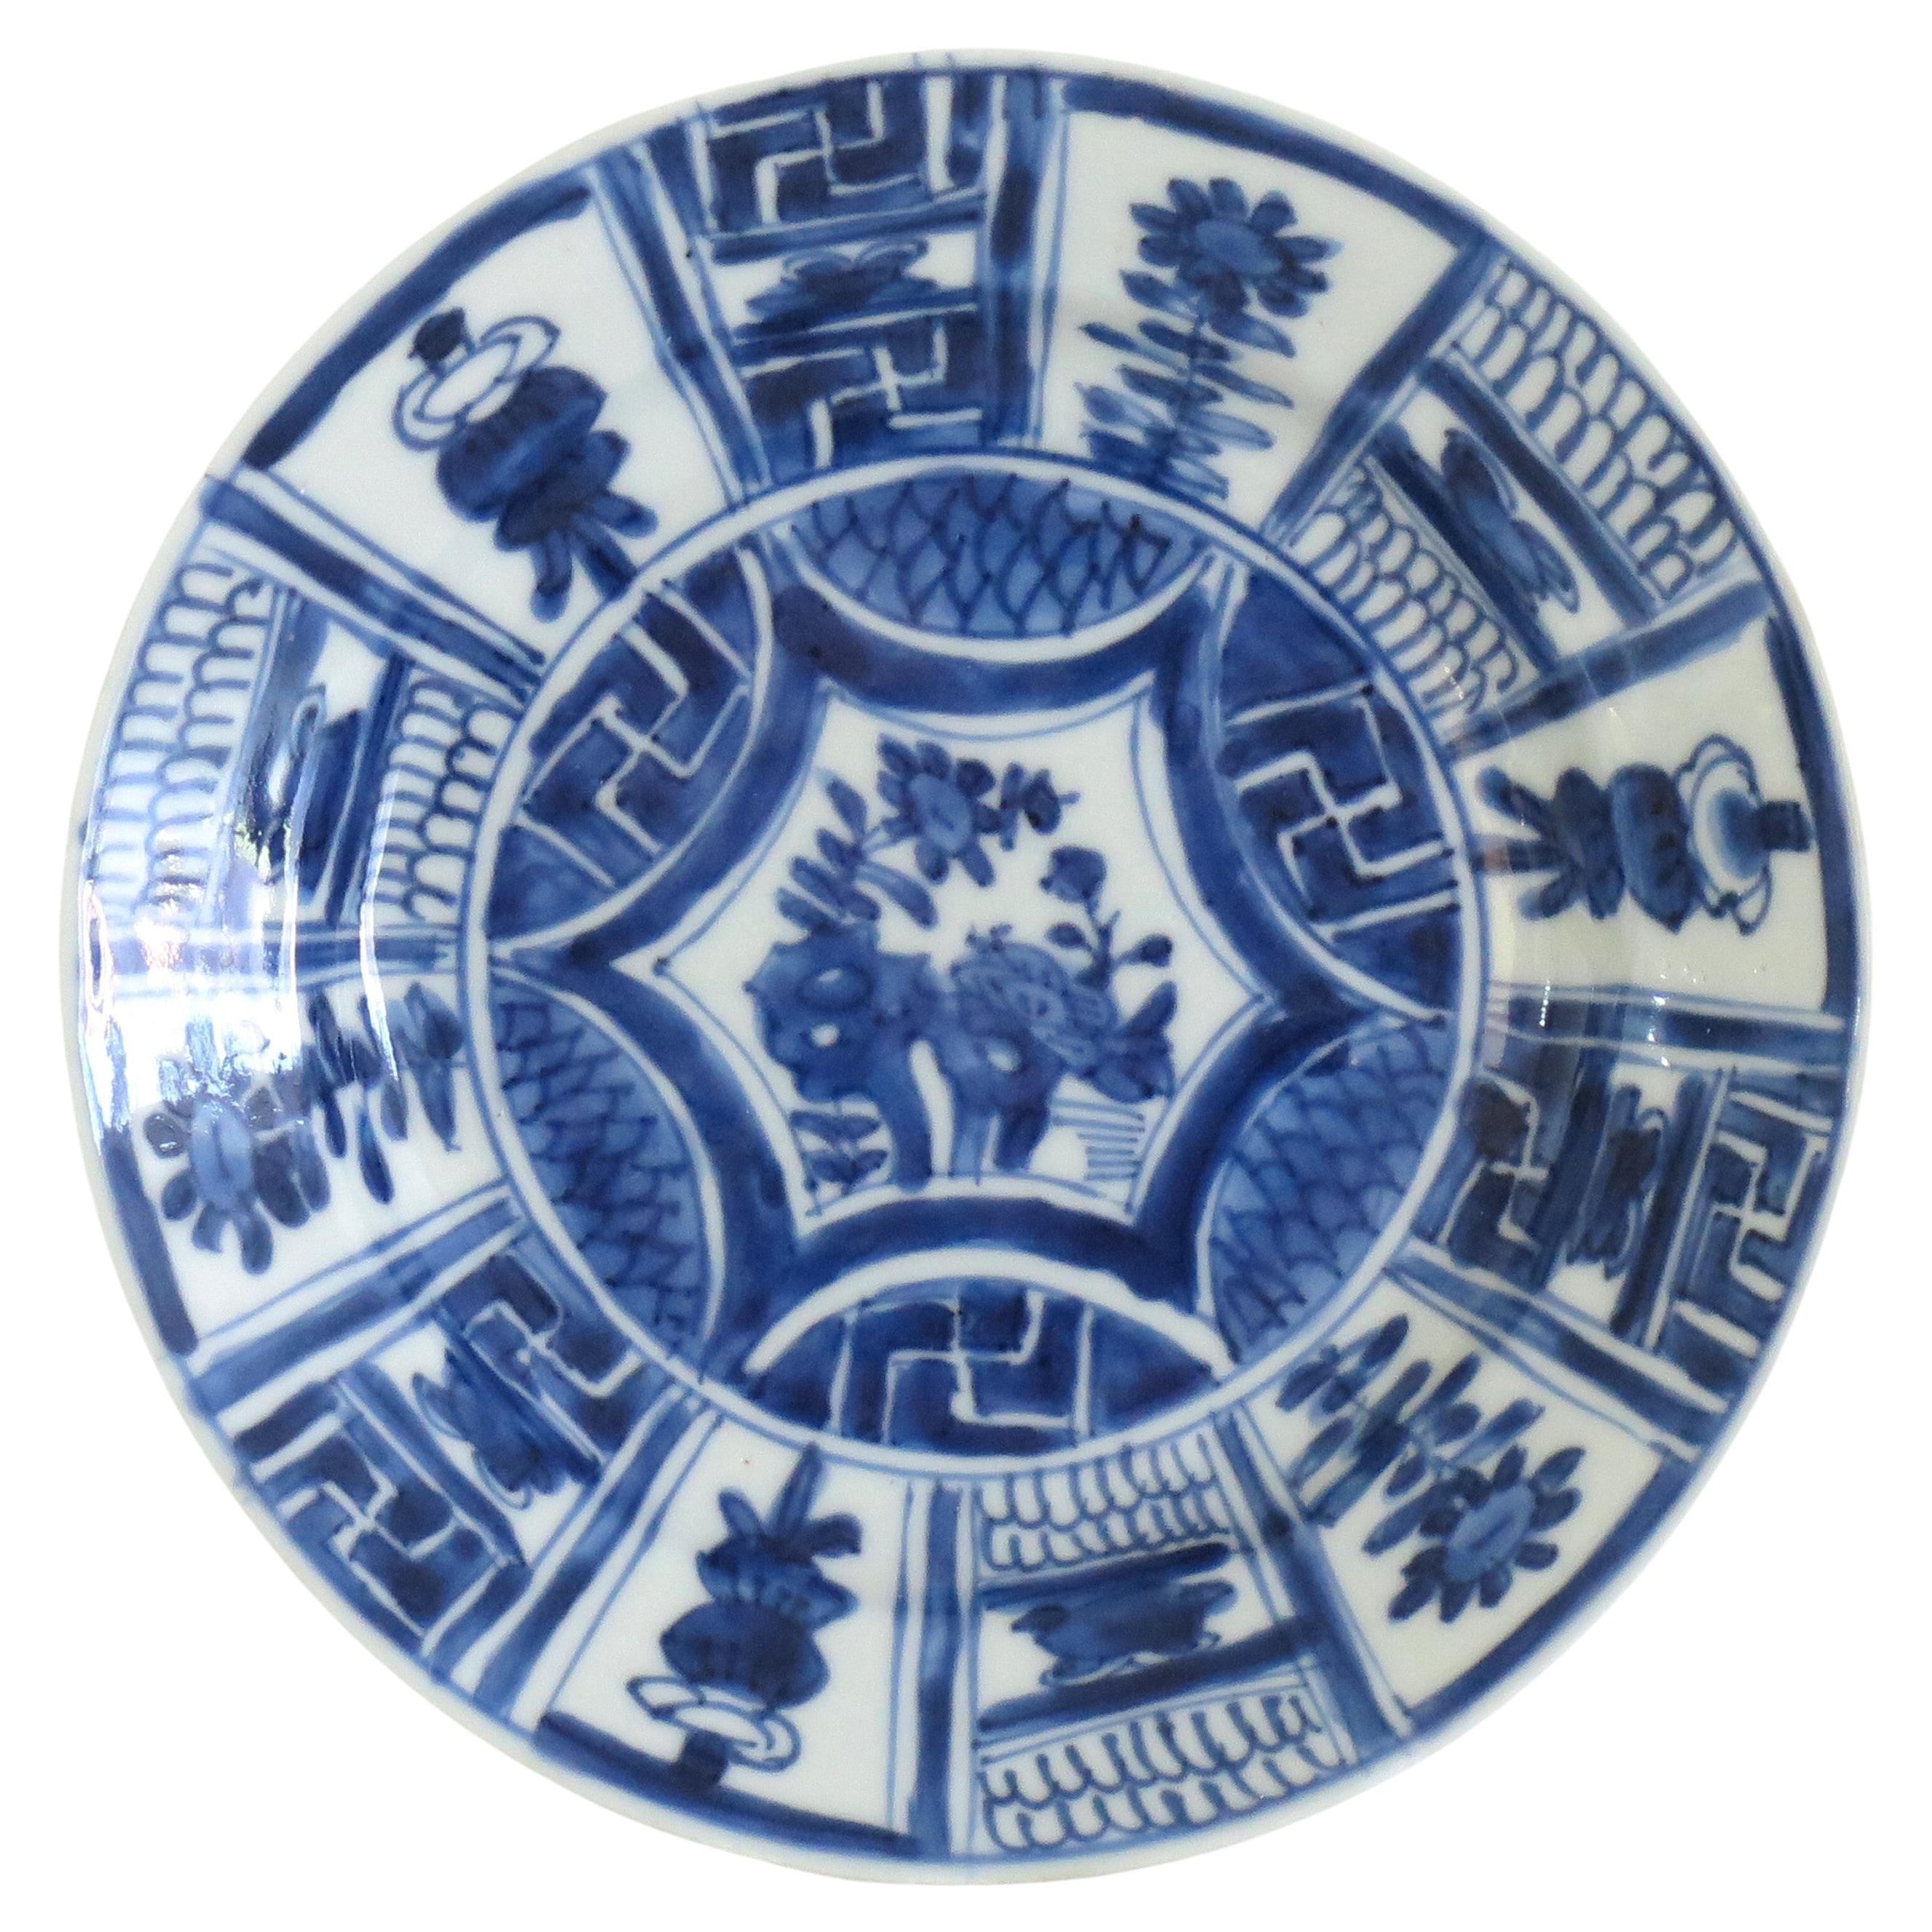 Dies ist eine handbemalte chinesische Export Kraak Porzellan blau und weiß Side Plate oder Dish, die wir auf die Ming, Wanli Periode, (1573-1620), aus dem frühen 17. Jahrhundert.

Der Teller / die Schale ist gut getöpfert mit einem sorgfältig